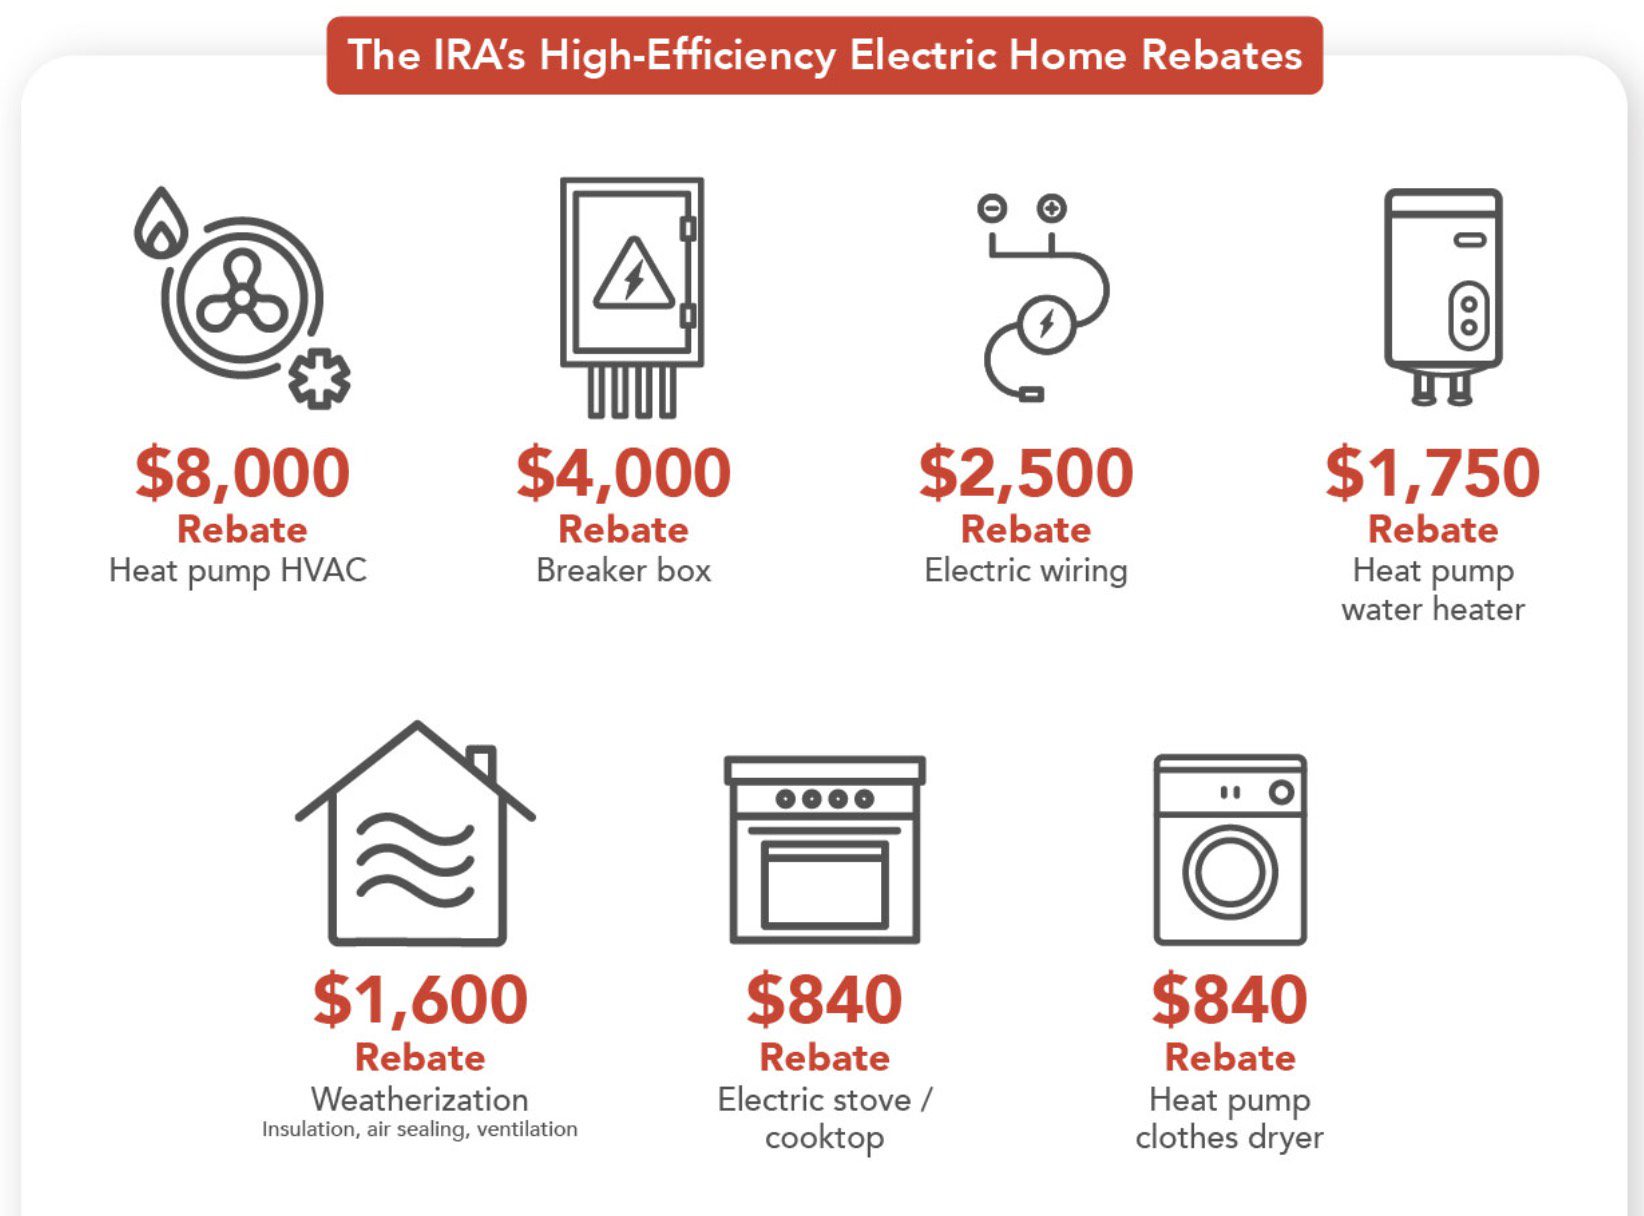 BPA Journal Understanding The High Efficiency Electric Home Rebate 